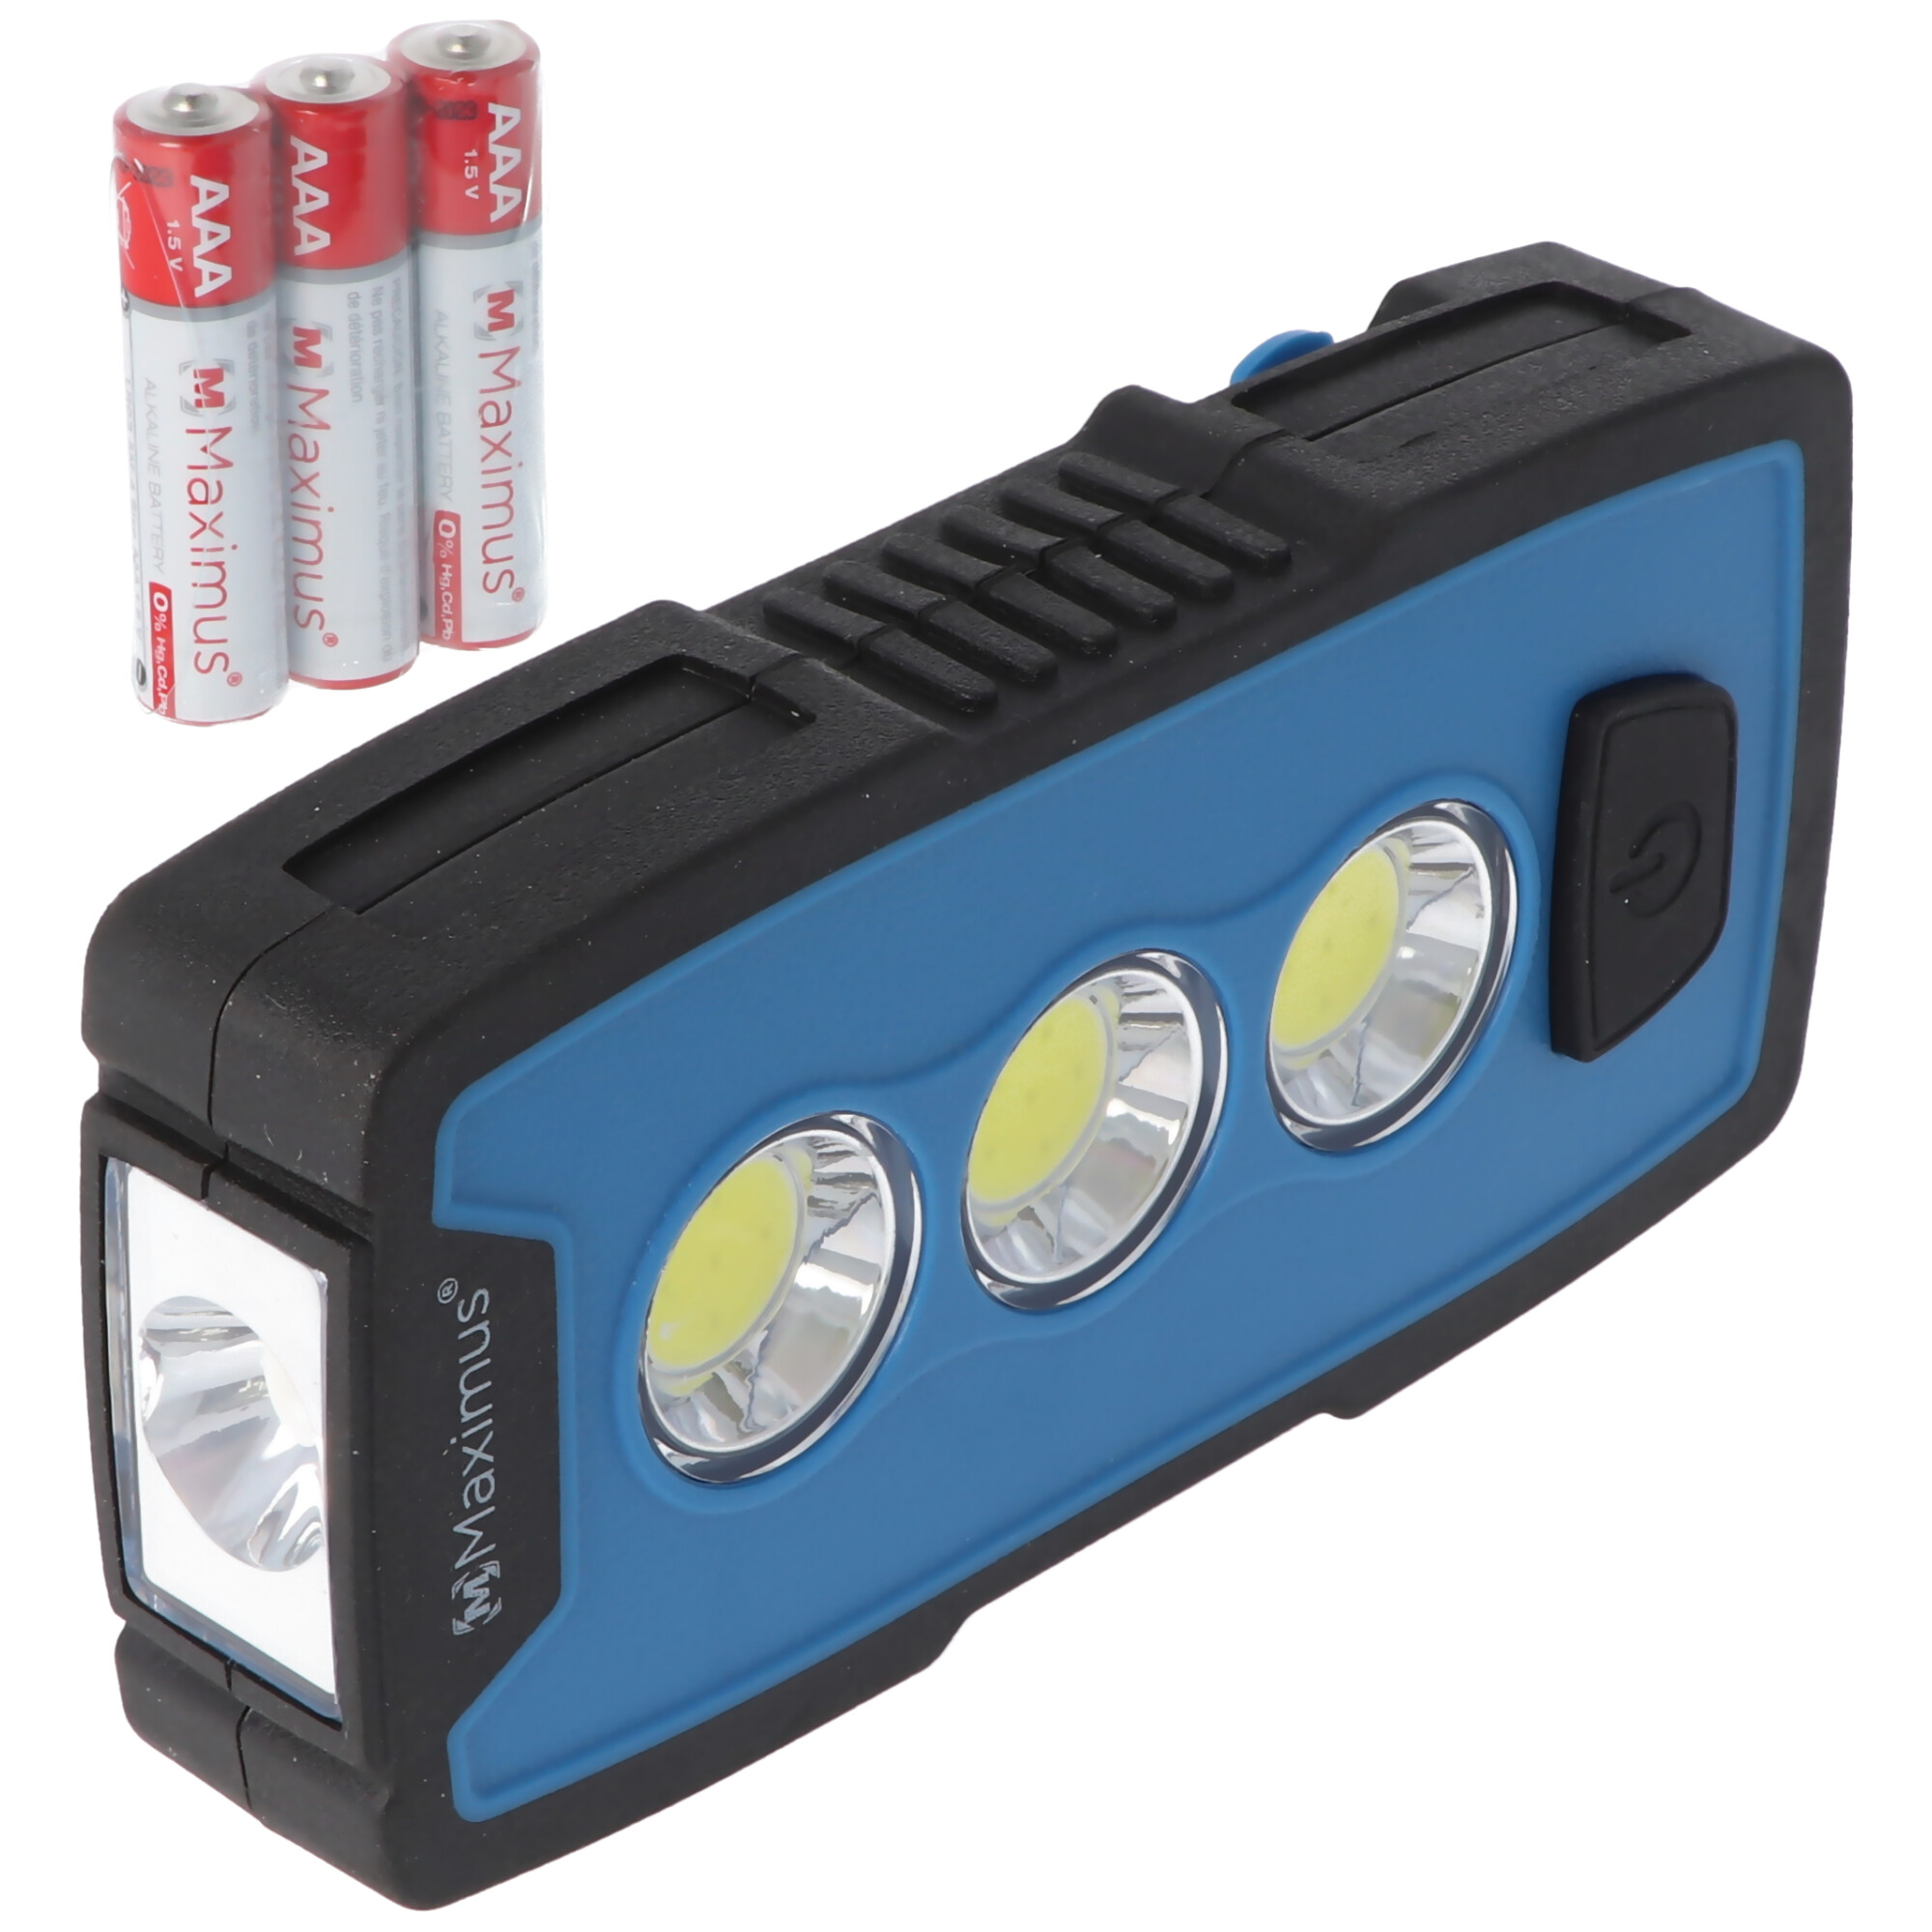 3 Watt LED Arbeitsleuchte M-WKL-006BBL, Multifunktionslampe, Taschenlampe, 230 Lumen, mit Haken, Magnet und Gürtelclip, inklusive 3x AAA Batterien